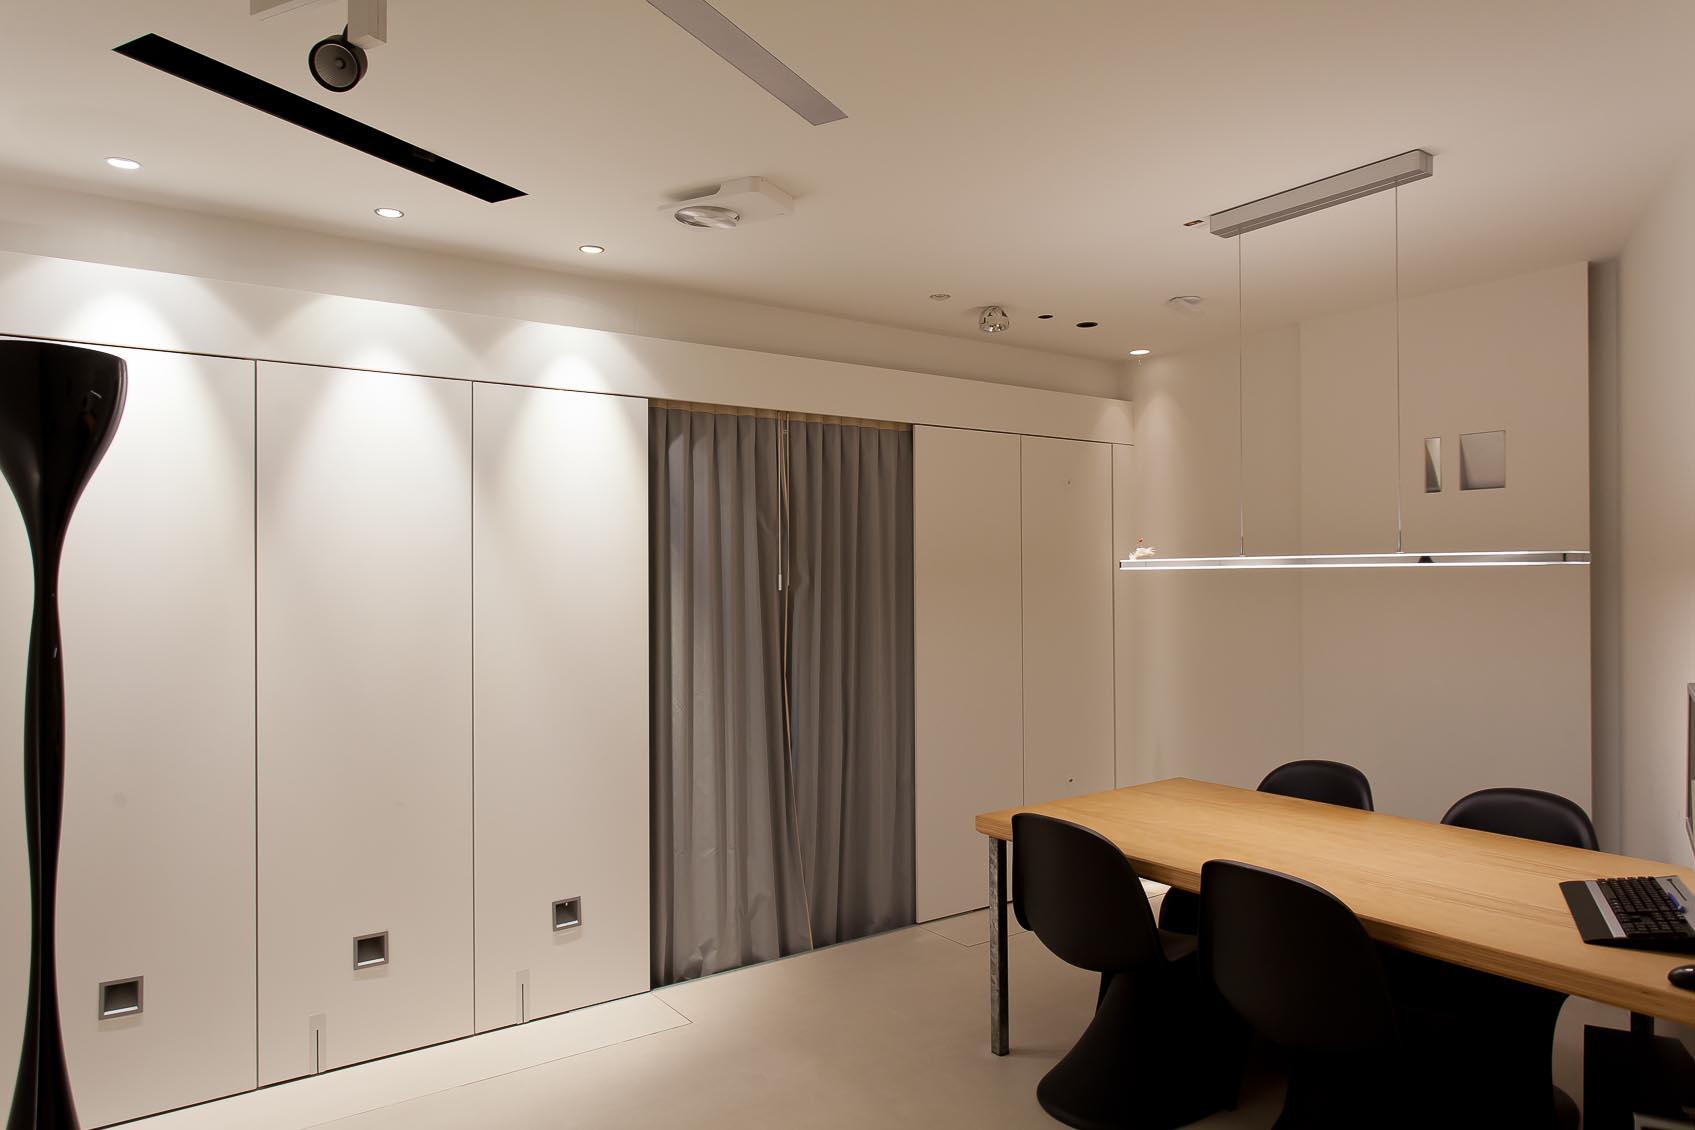 Beleef interieurverlichting in onze design lichtstudio4